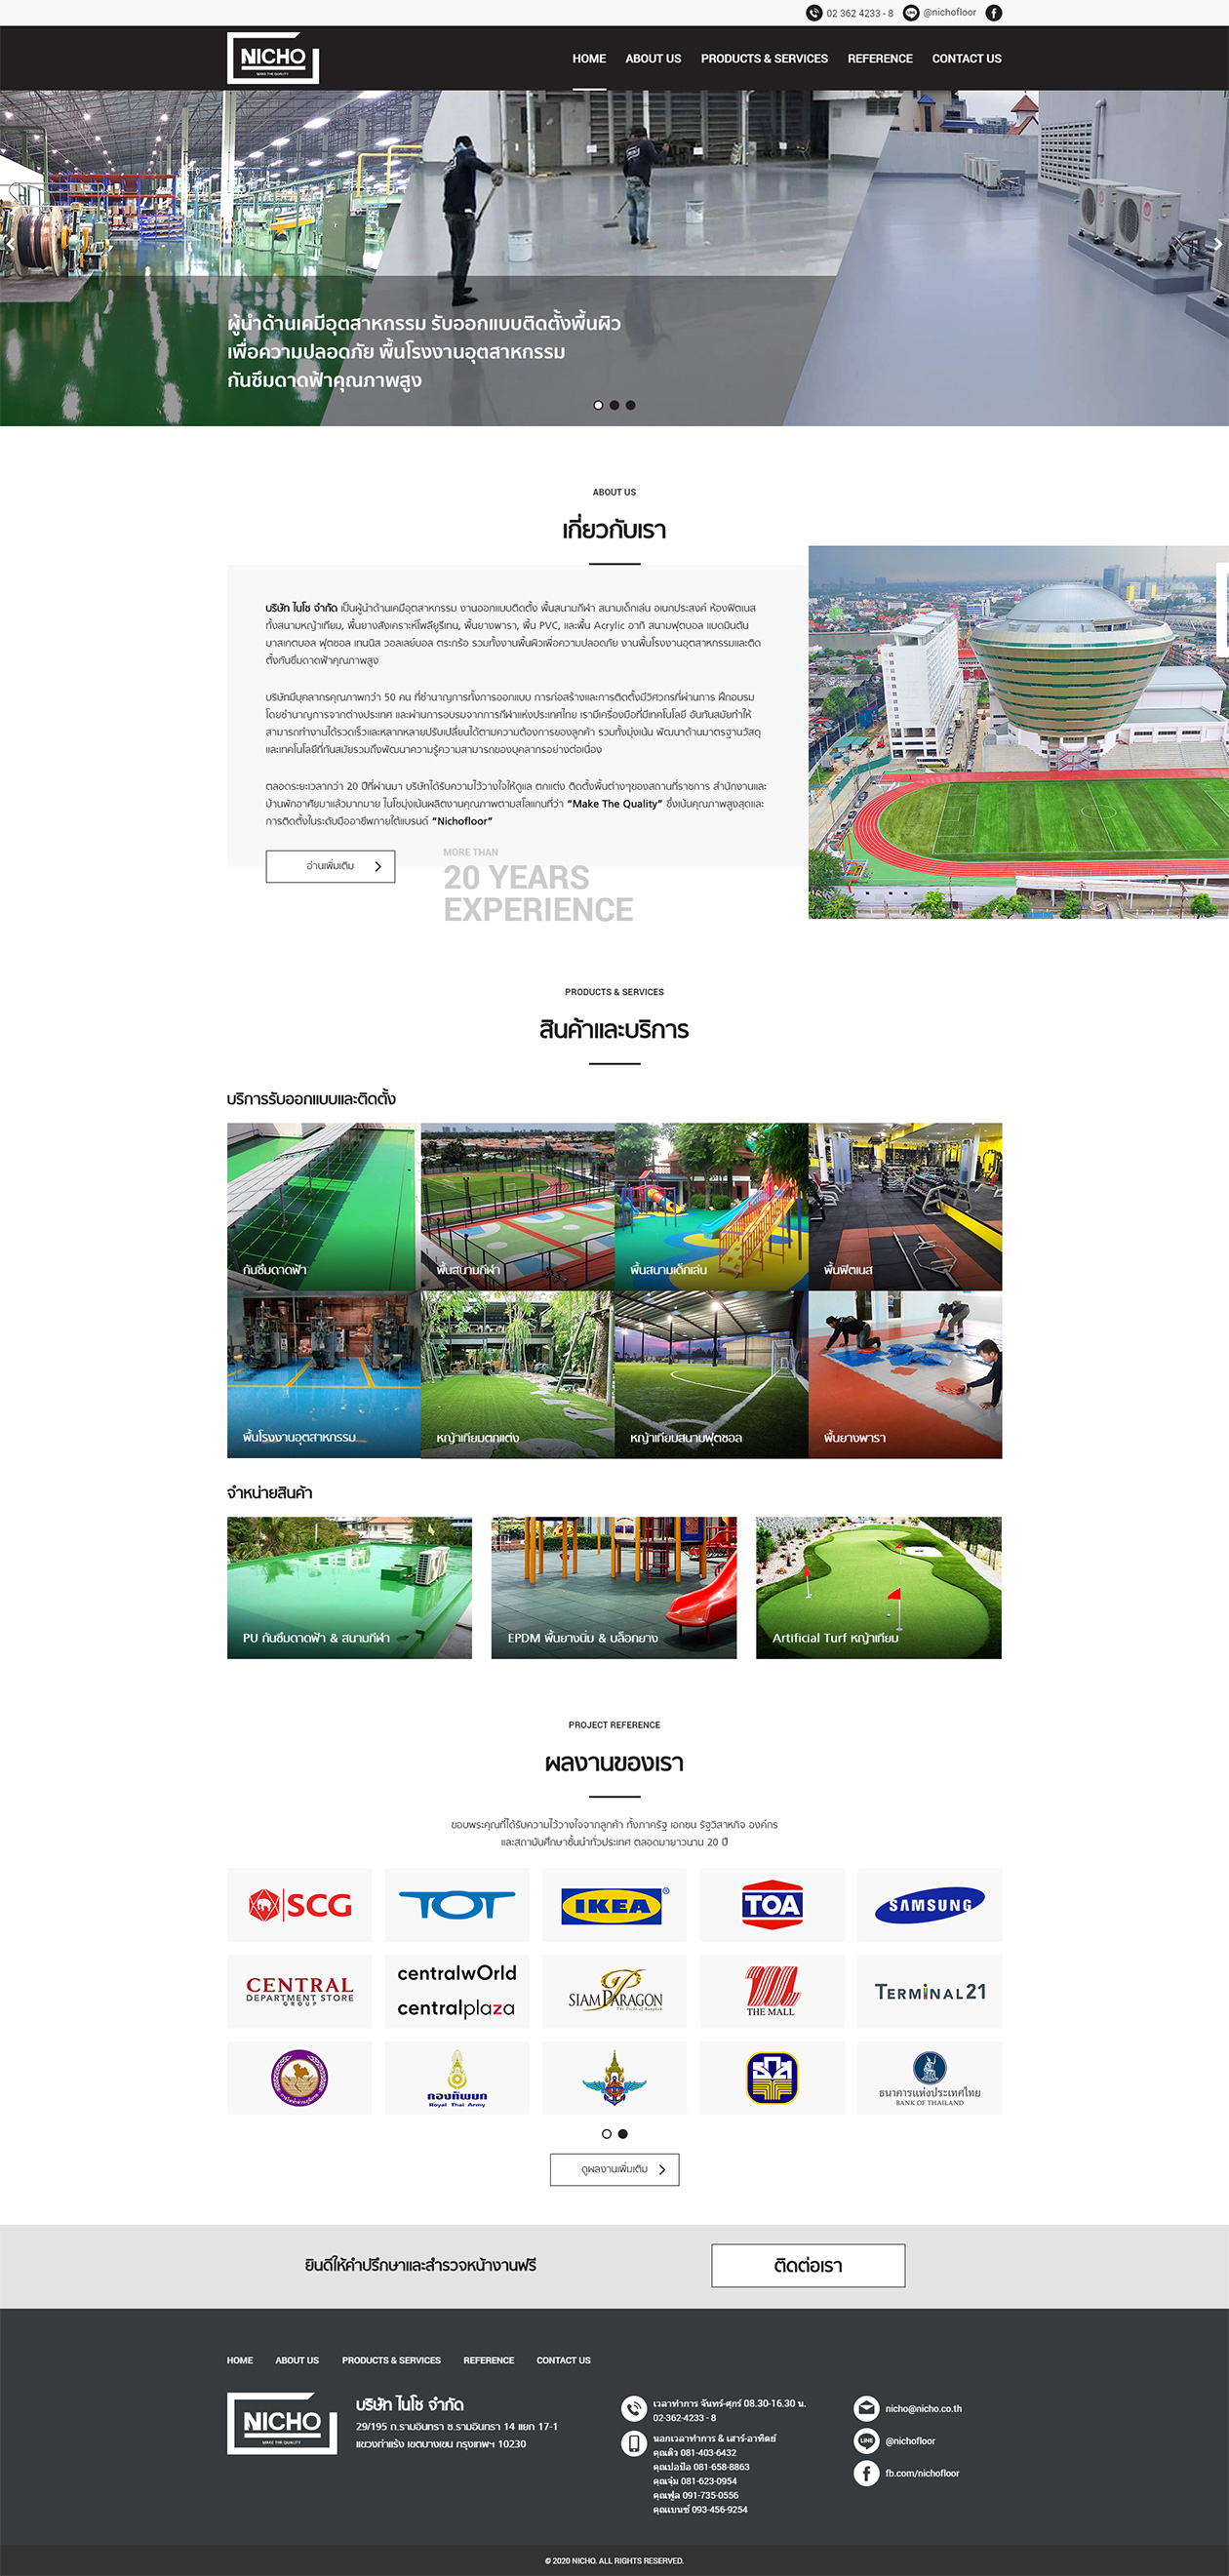 รับทำว็บไซต์ ออกแบบเว็บไซต์ บริษัท ไนโช ผู้นำด้านเคมีสีพื้นโรงงานอุตสาหกรรม งานออกแบบติดตั้งพื้นสนามกีฬา